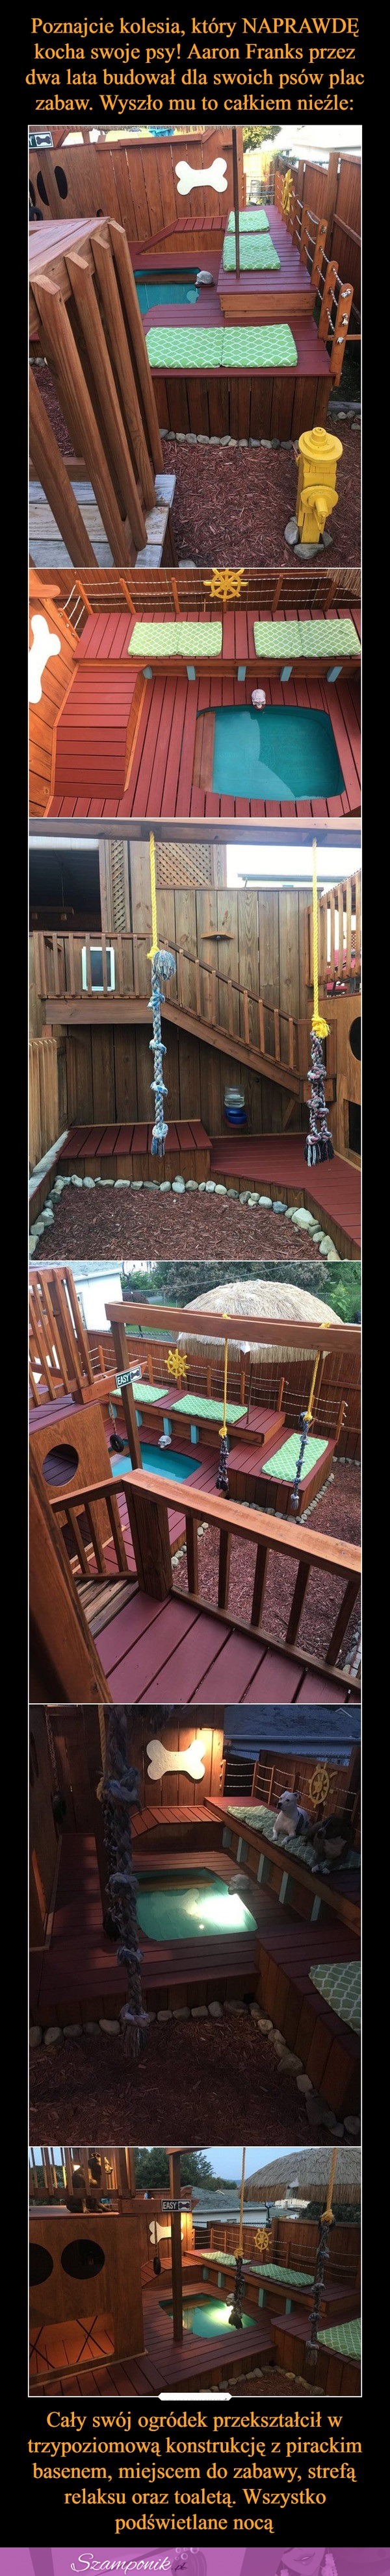 Aaro Franks przez 2 lata budował dla swoich psów plac zabaw. Wyszło mu to całkiem nieźle!